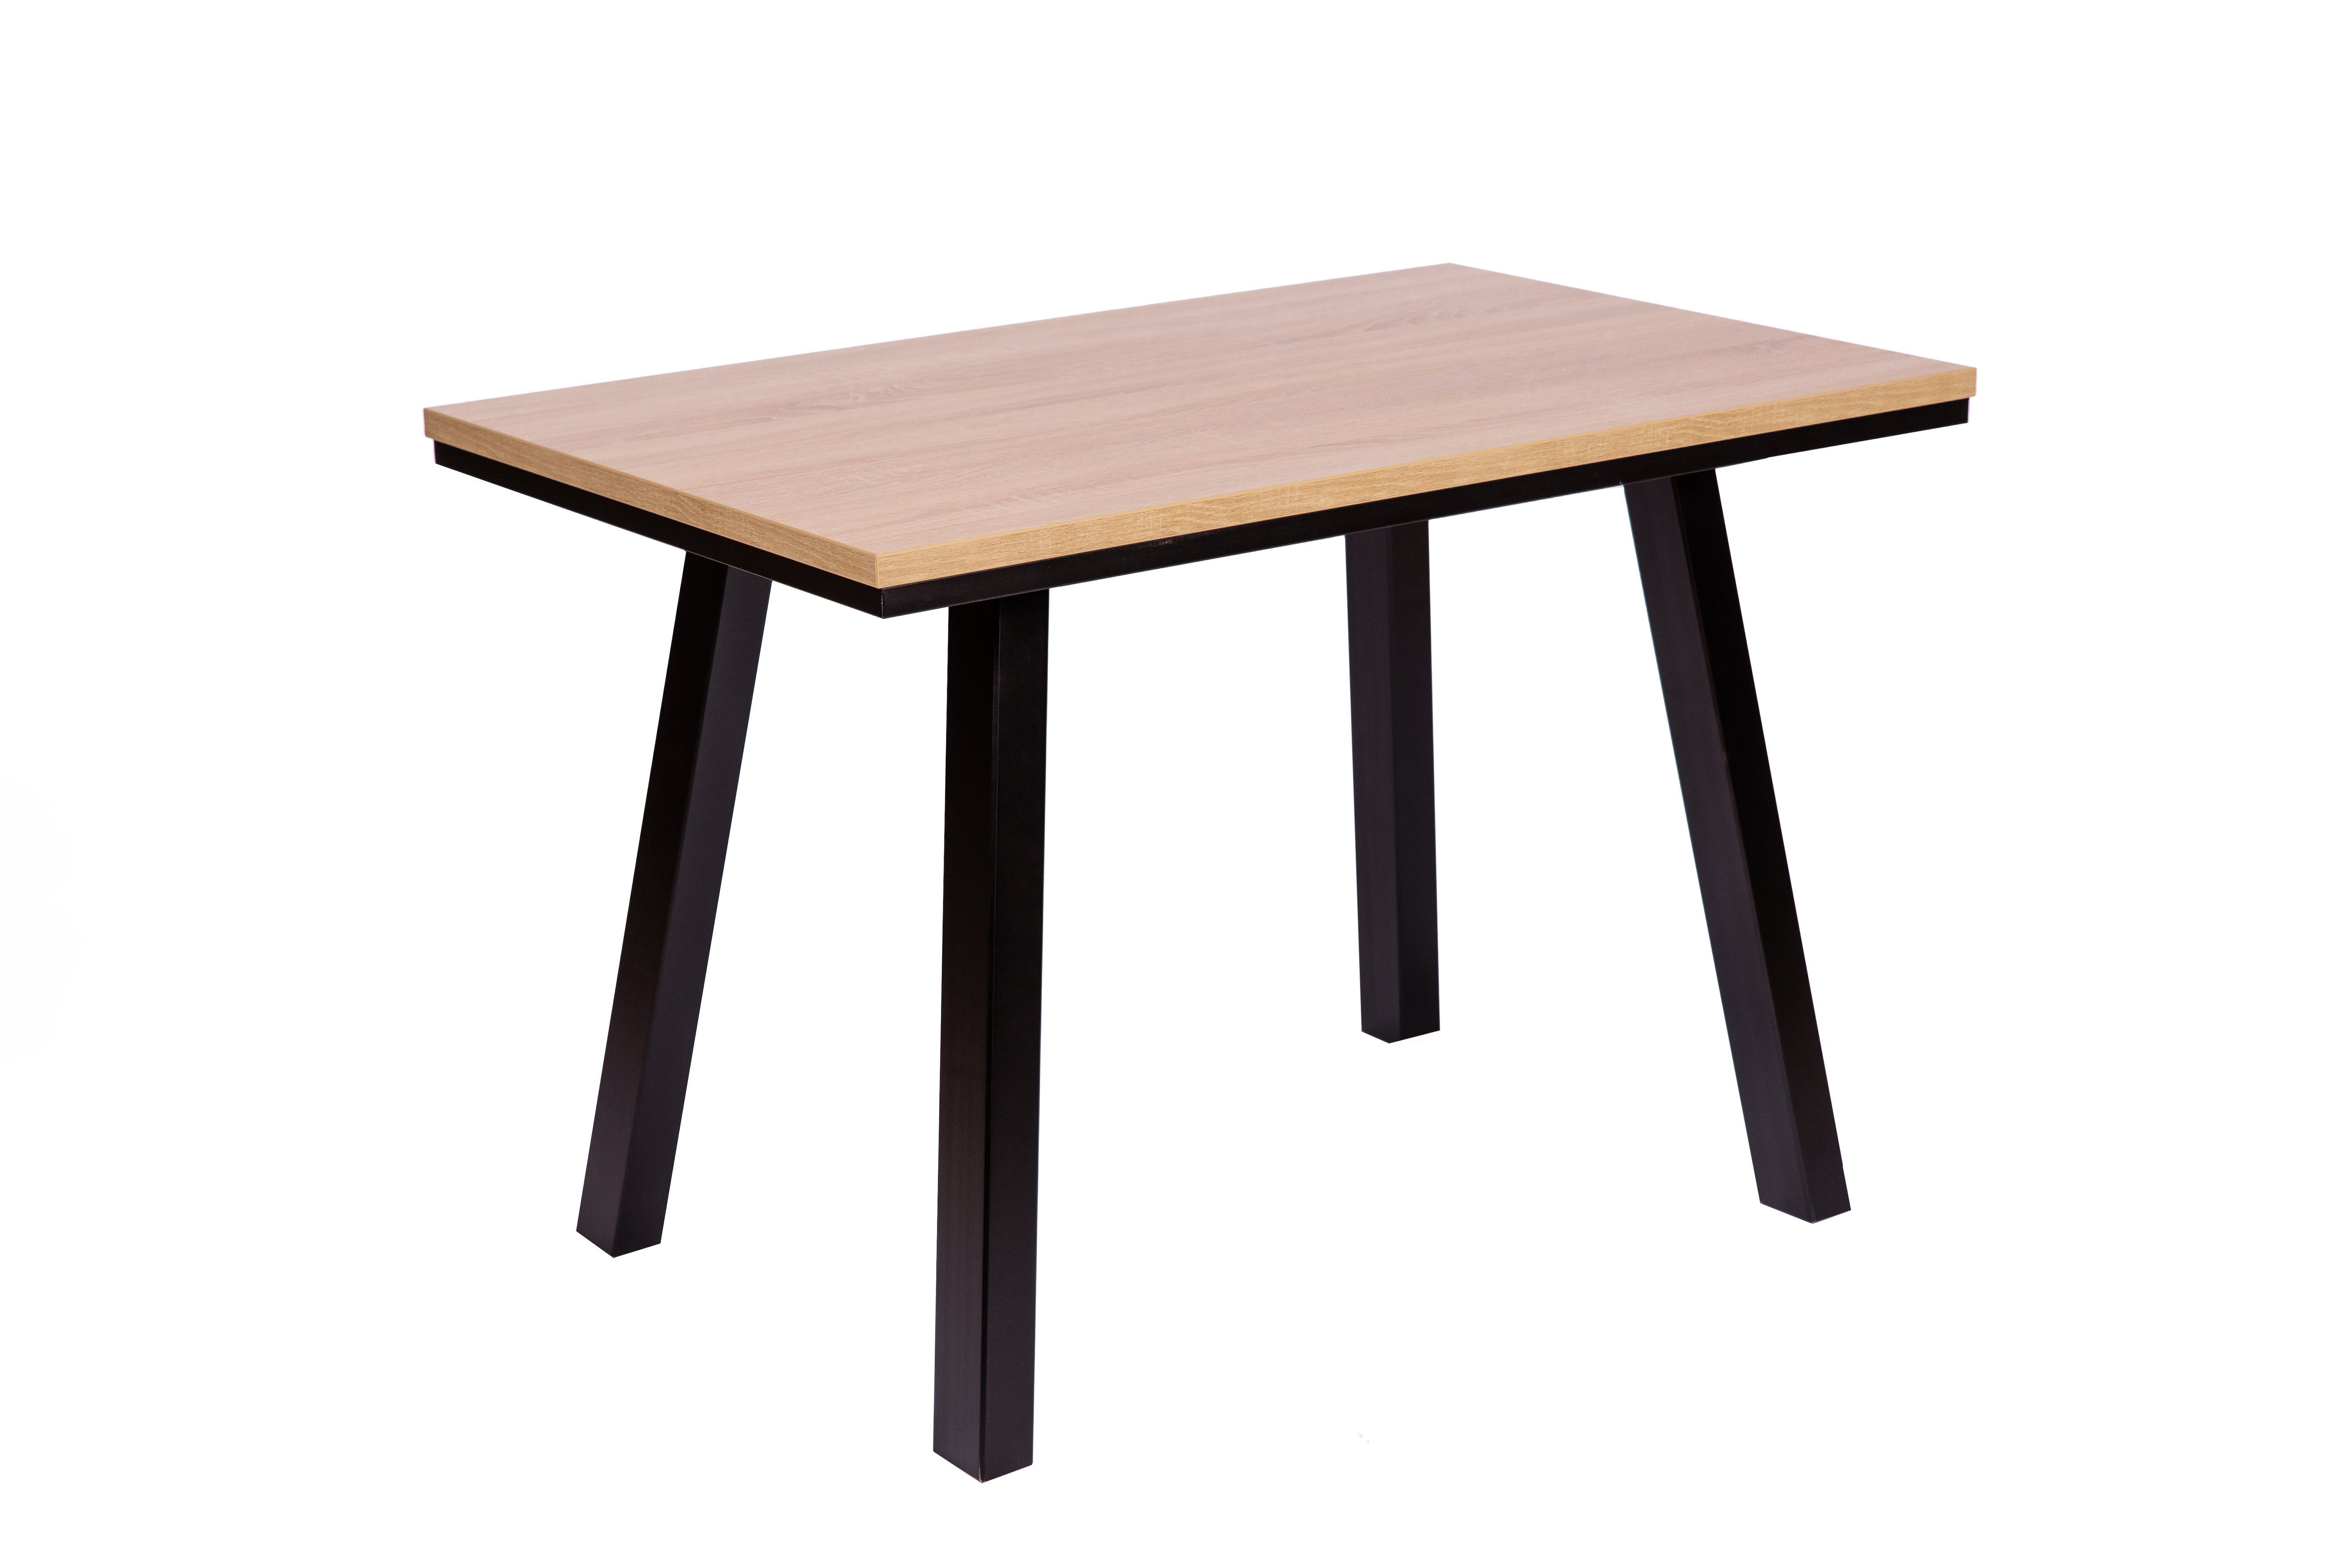 Tischfüße schwarz lackiert massiv 'Der home kundler Elegante' Esstisch 110x70cm,